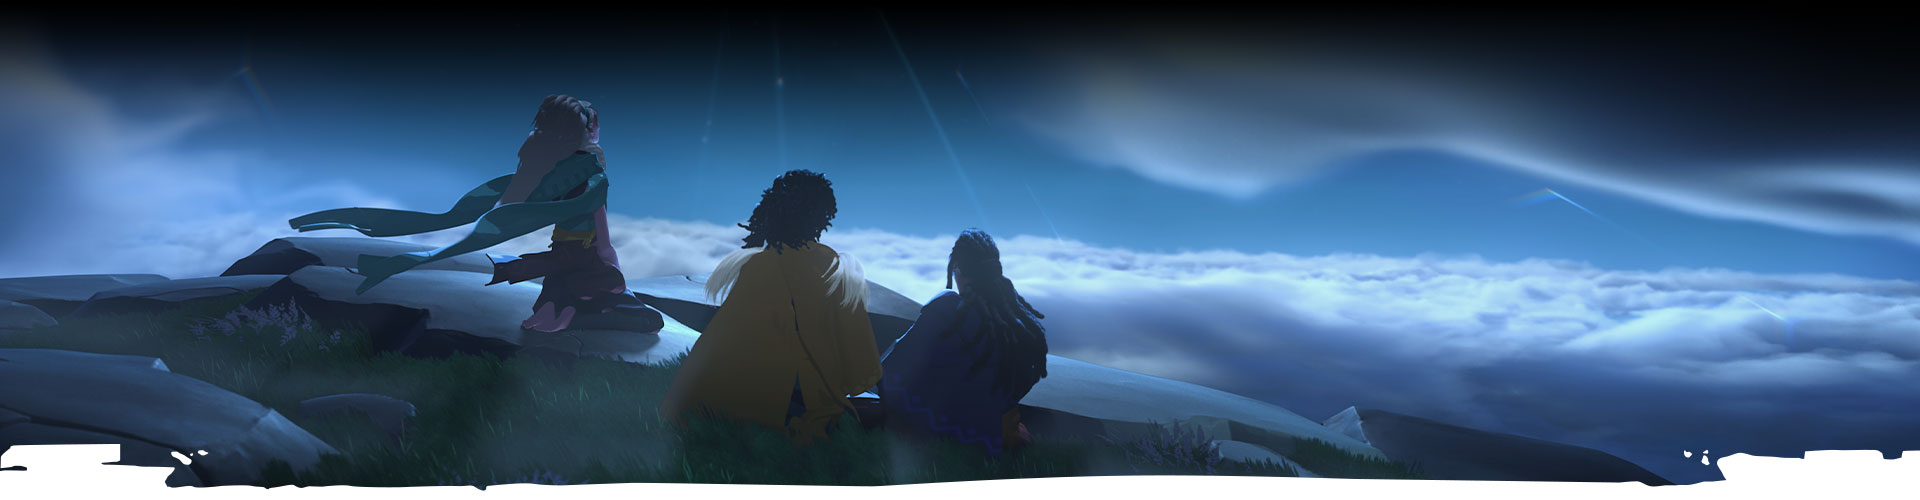 Tri postavy sa pozerajú na nočnú oblohu. 